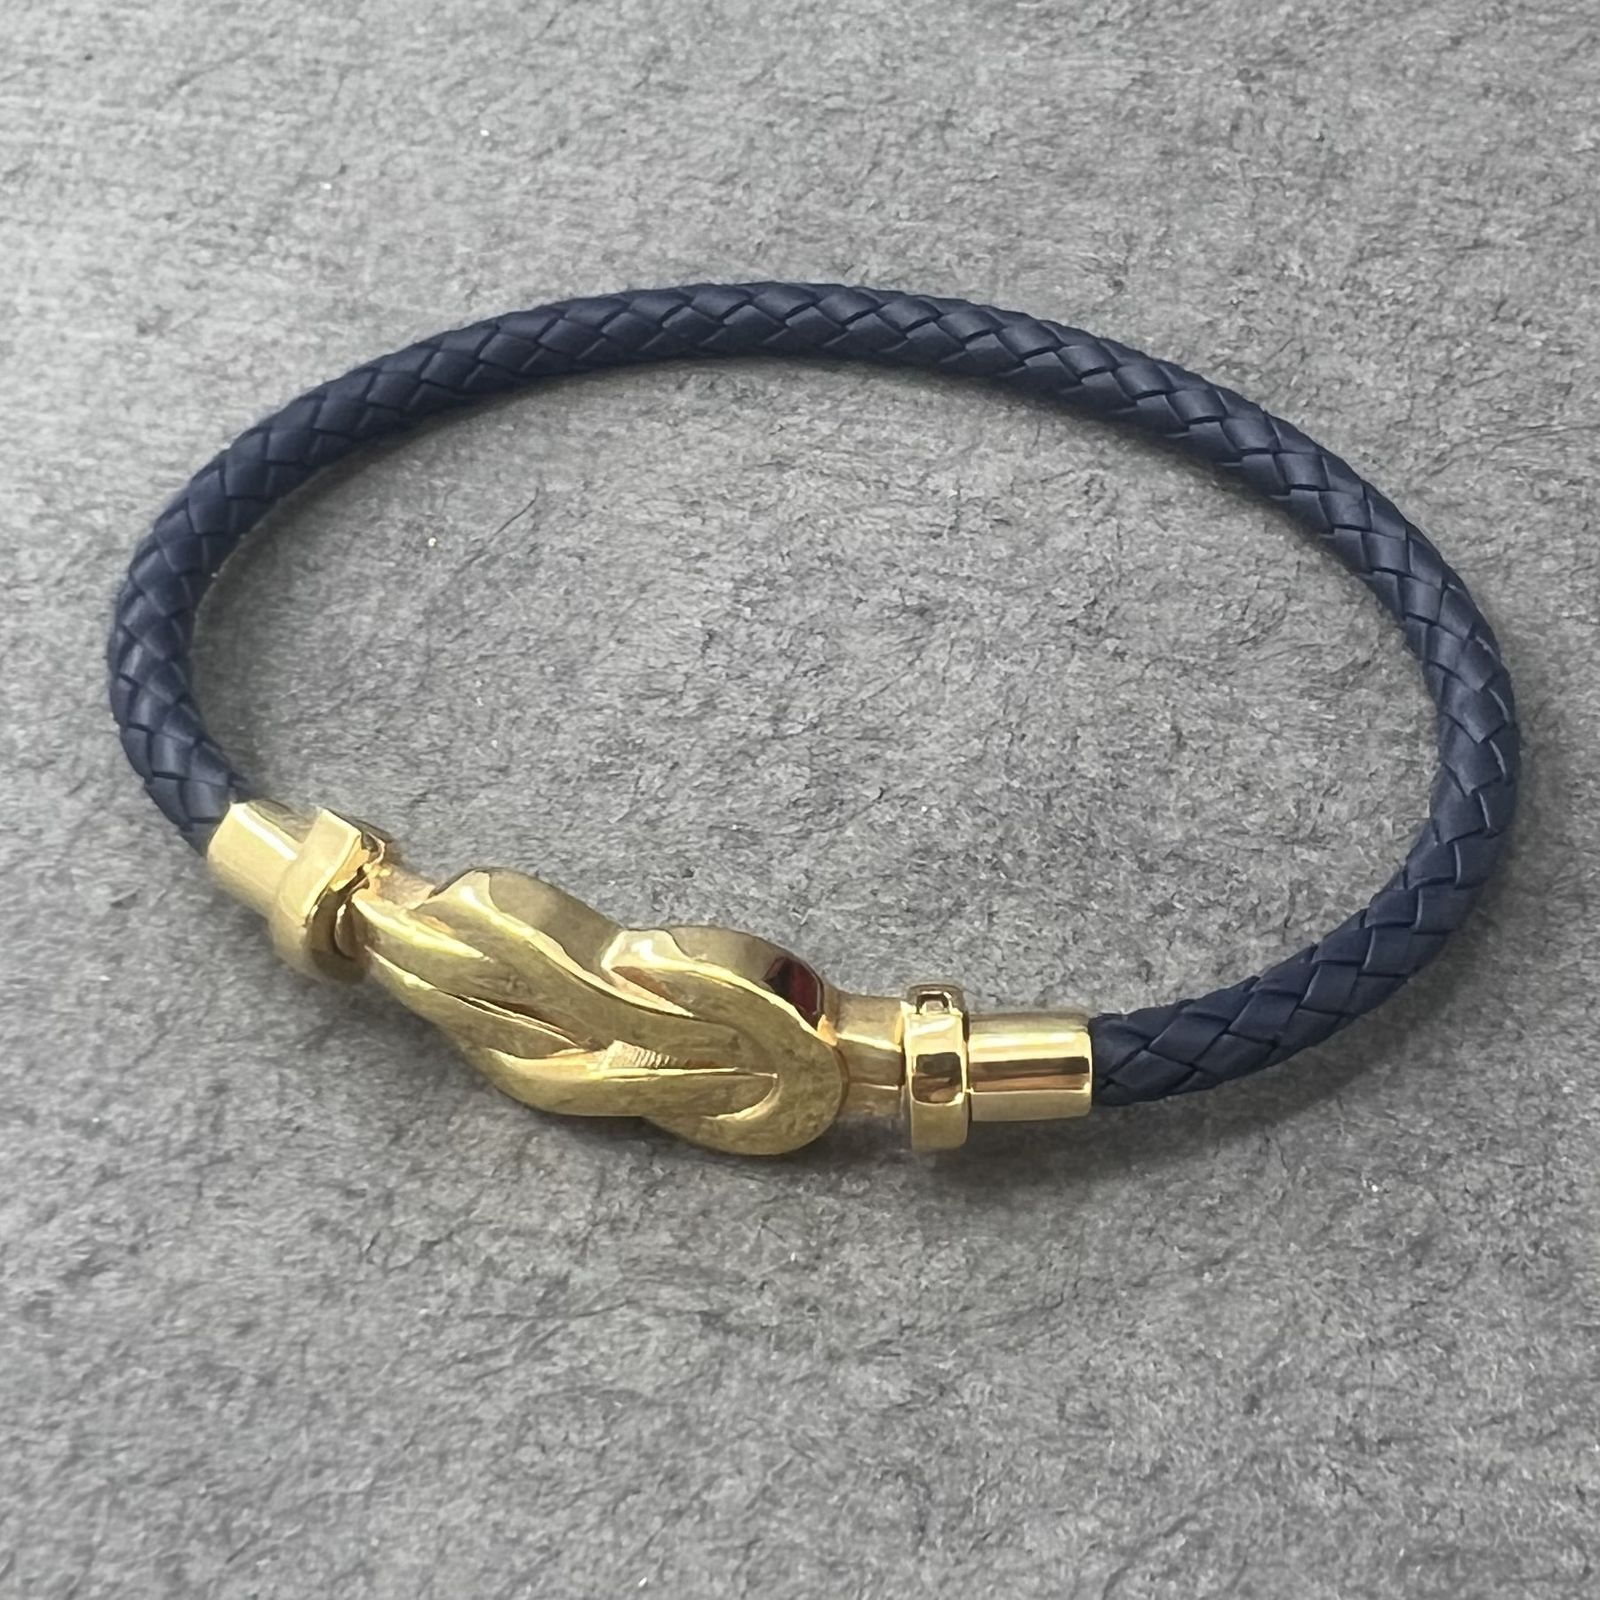 دستبند طلا 18 عیار زنانه دوست خوب مدل dk151 -  - 2